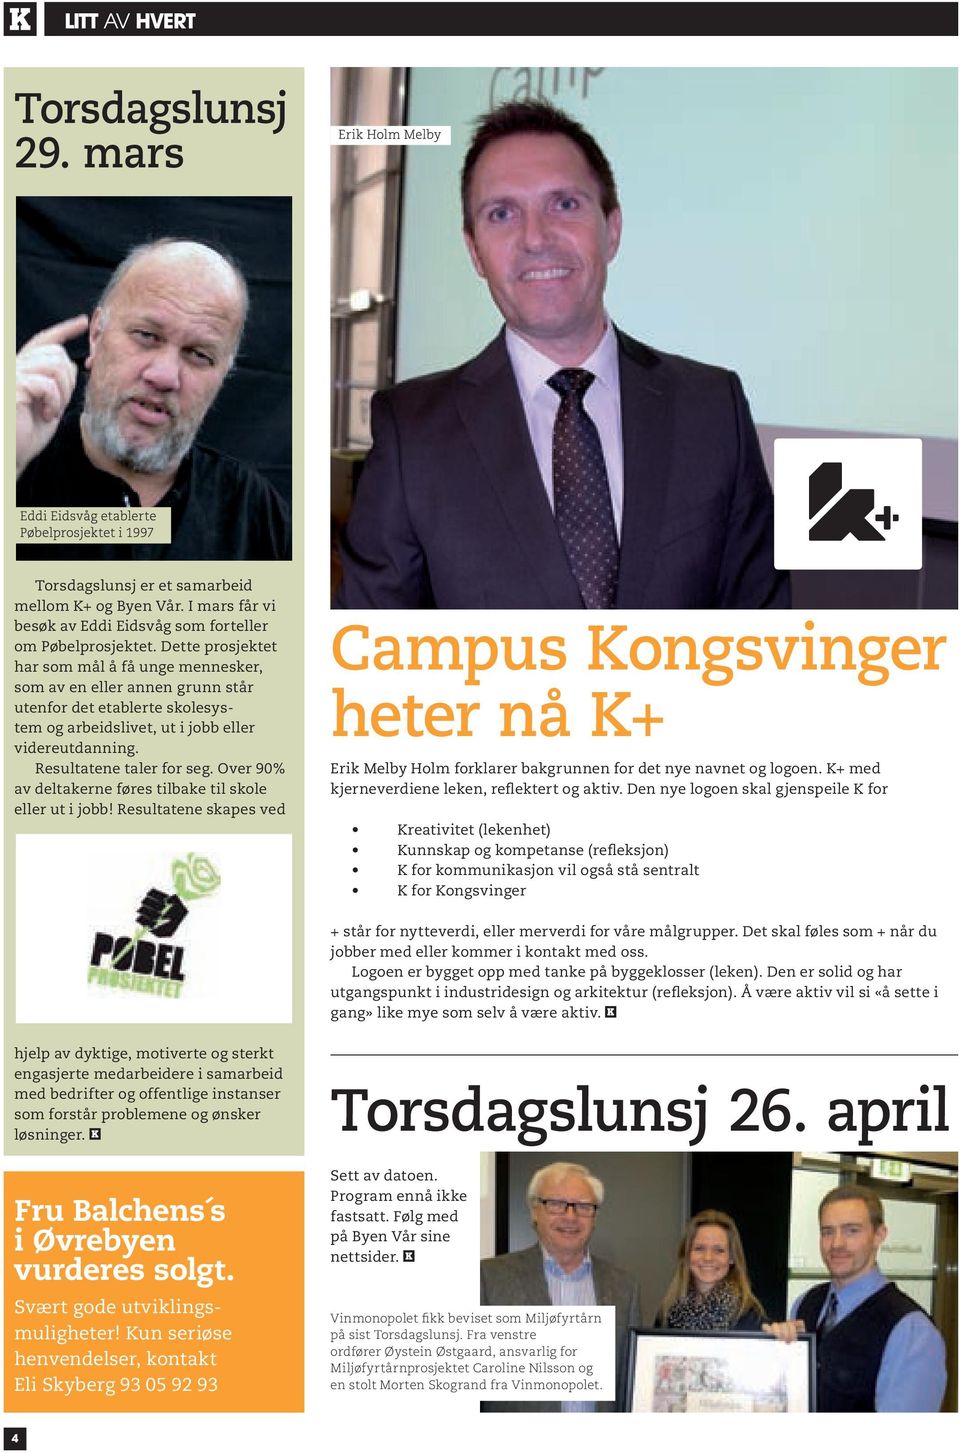 Over 90% av deltakerne føres tilbake til skole eller ut i jobb! Resultatene skapes ved Campus Kongsvinger heter nå K+ Erik Melby Holm forklarer bakgrunnen for det nye navnet og logoen.